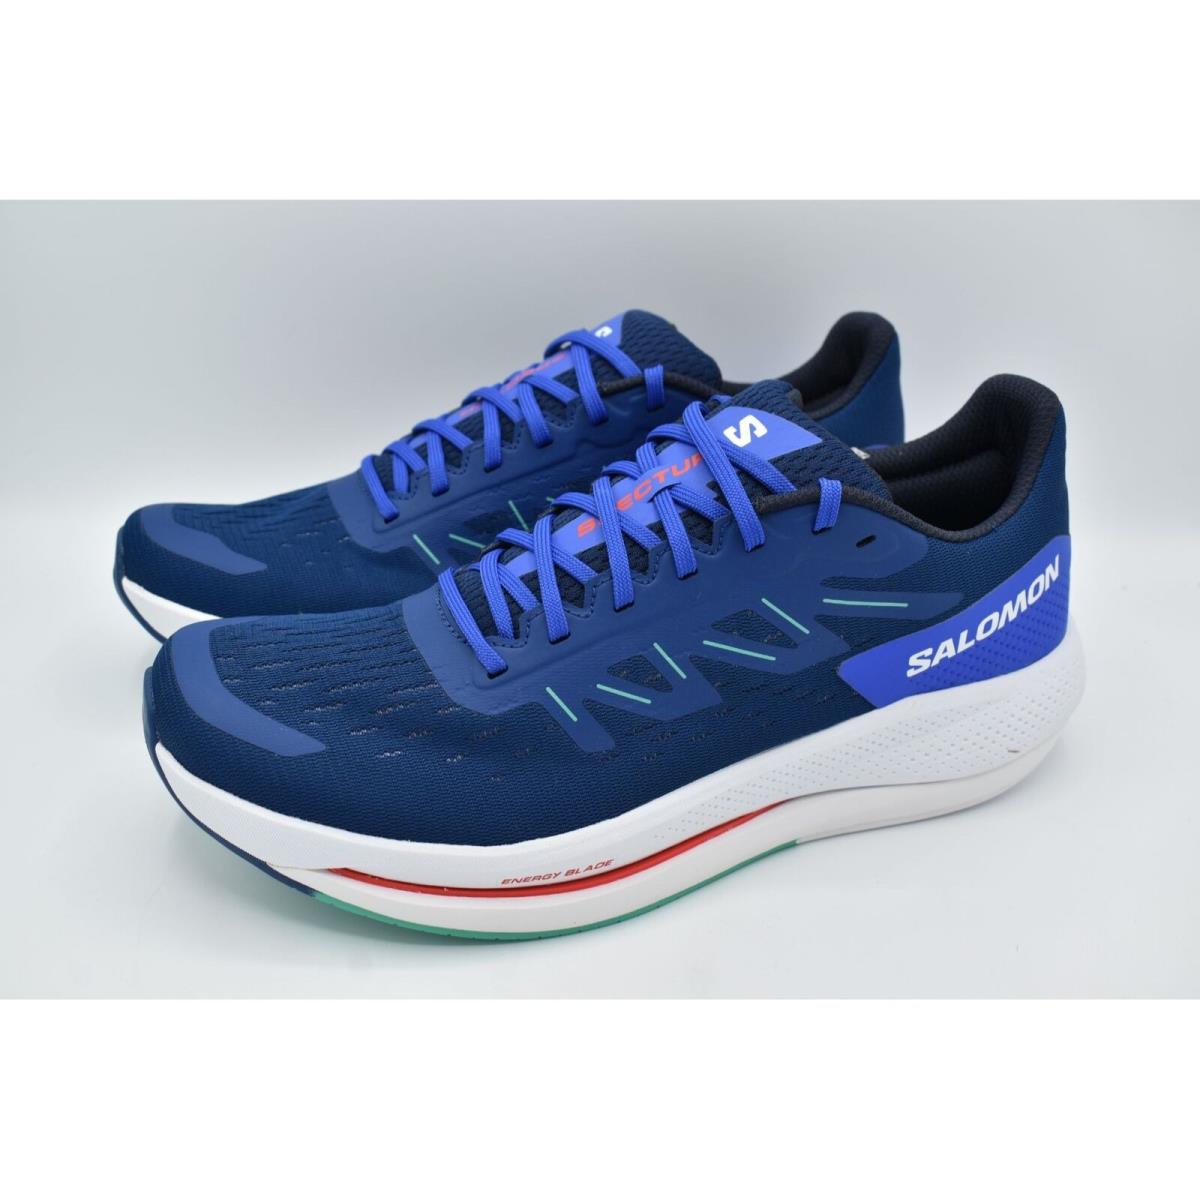 Salomon Mens Size 13 Spectur Estate Blue Mint Leaf Running Shoes Sneakers